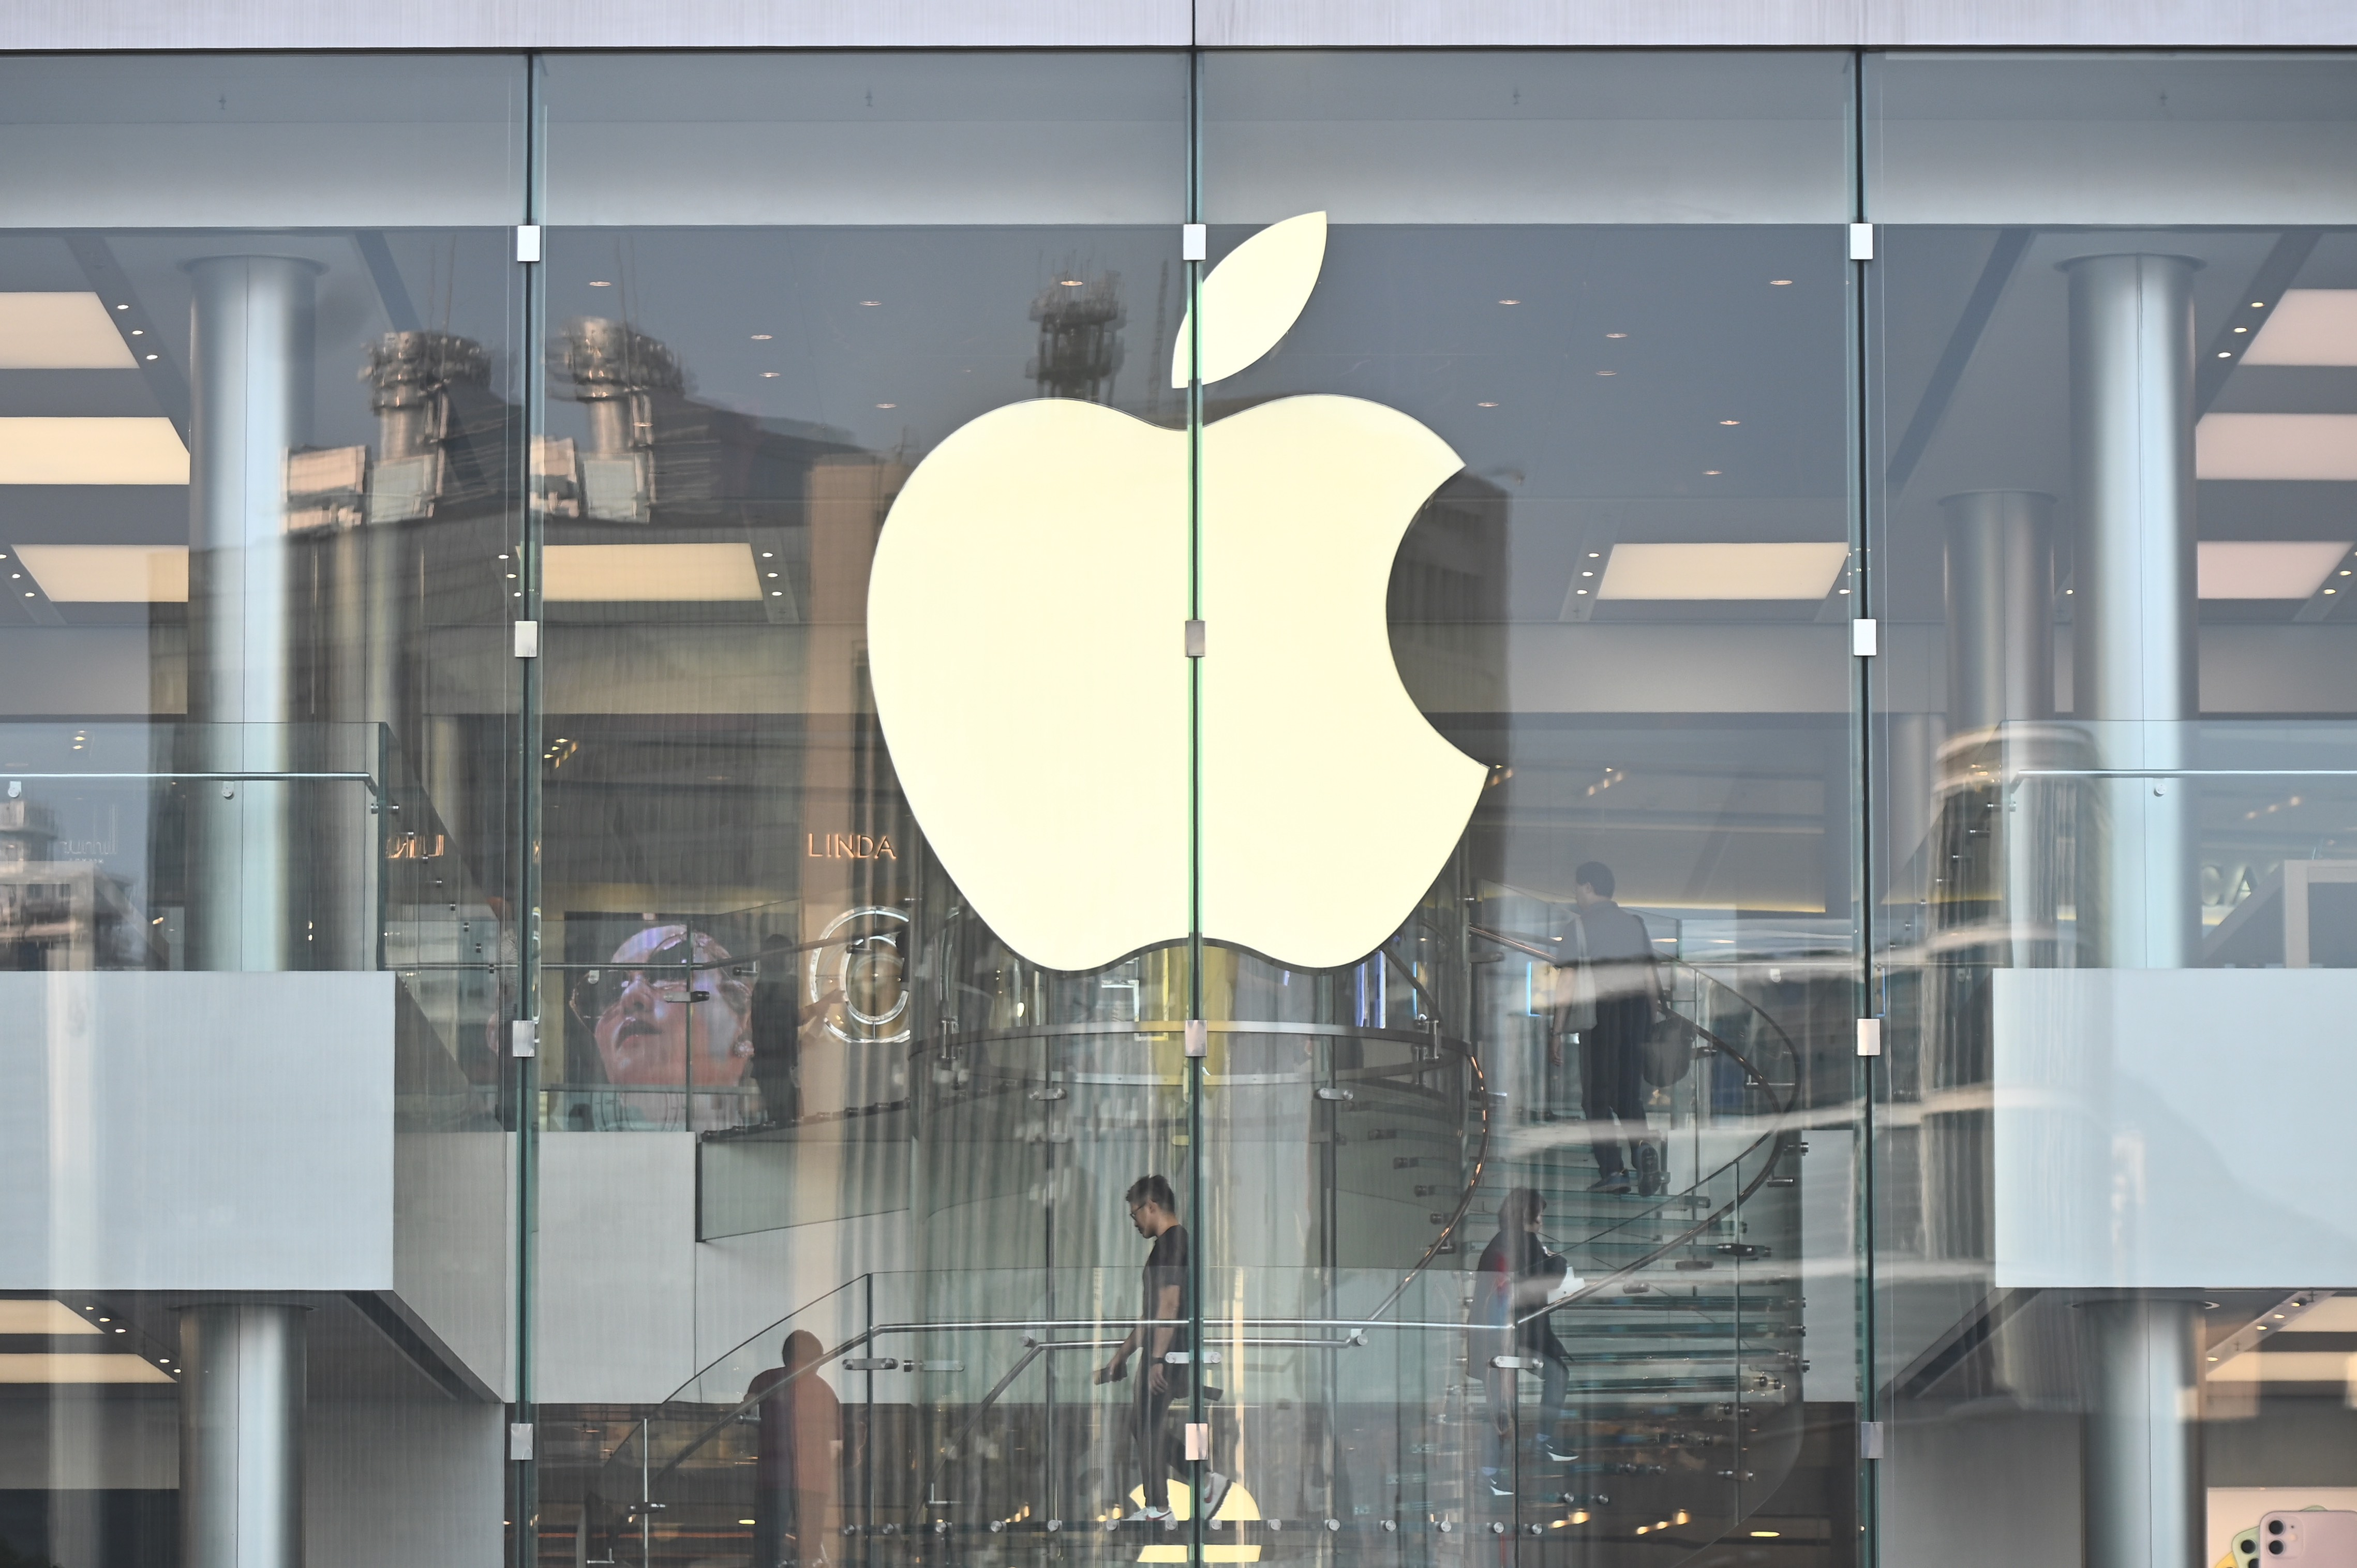 أخبار 14 فبراير 2020
Apple يربح موظفو المتجر دعوى قضائية ضد صاحب العمل